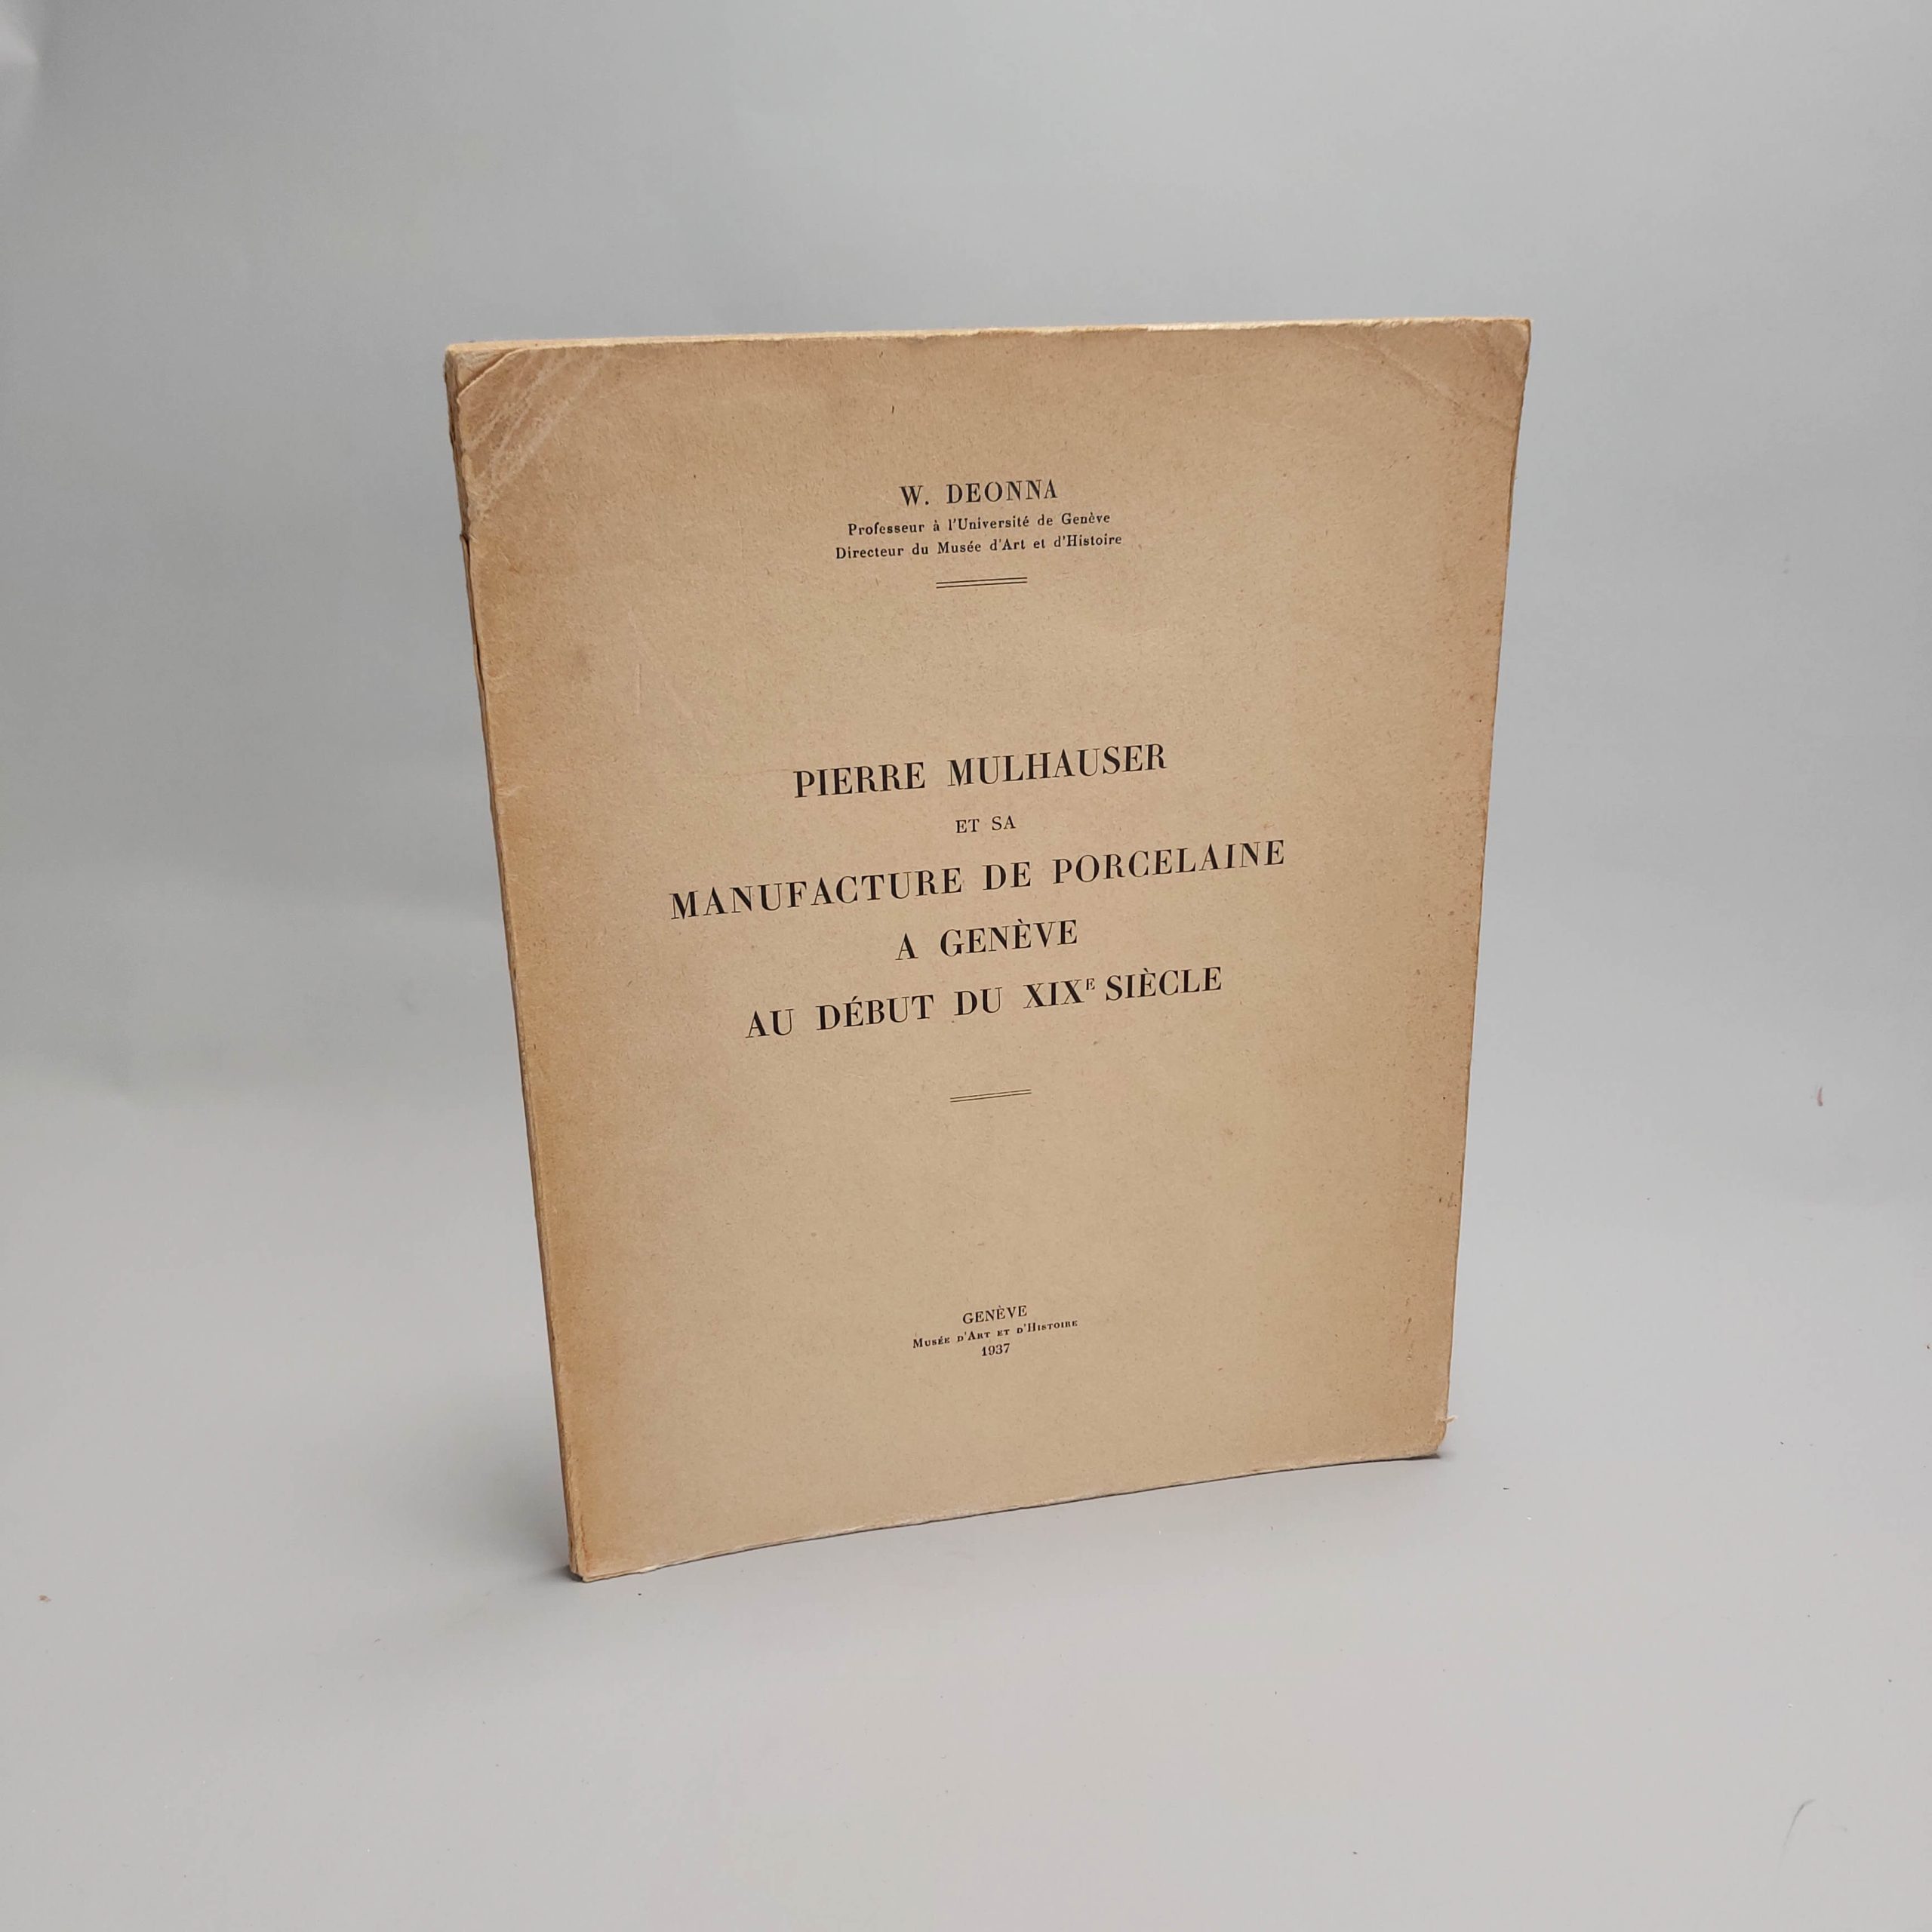 Reference Book European Porcelain – 1937 – Deonna  Pierre Mulhauser et sa manufacture de porcelaine à Genève au début du XIXe siècle